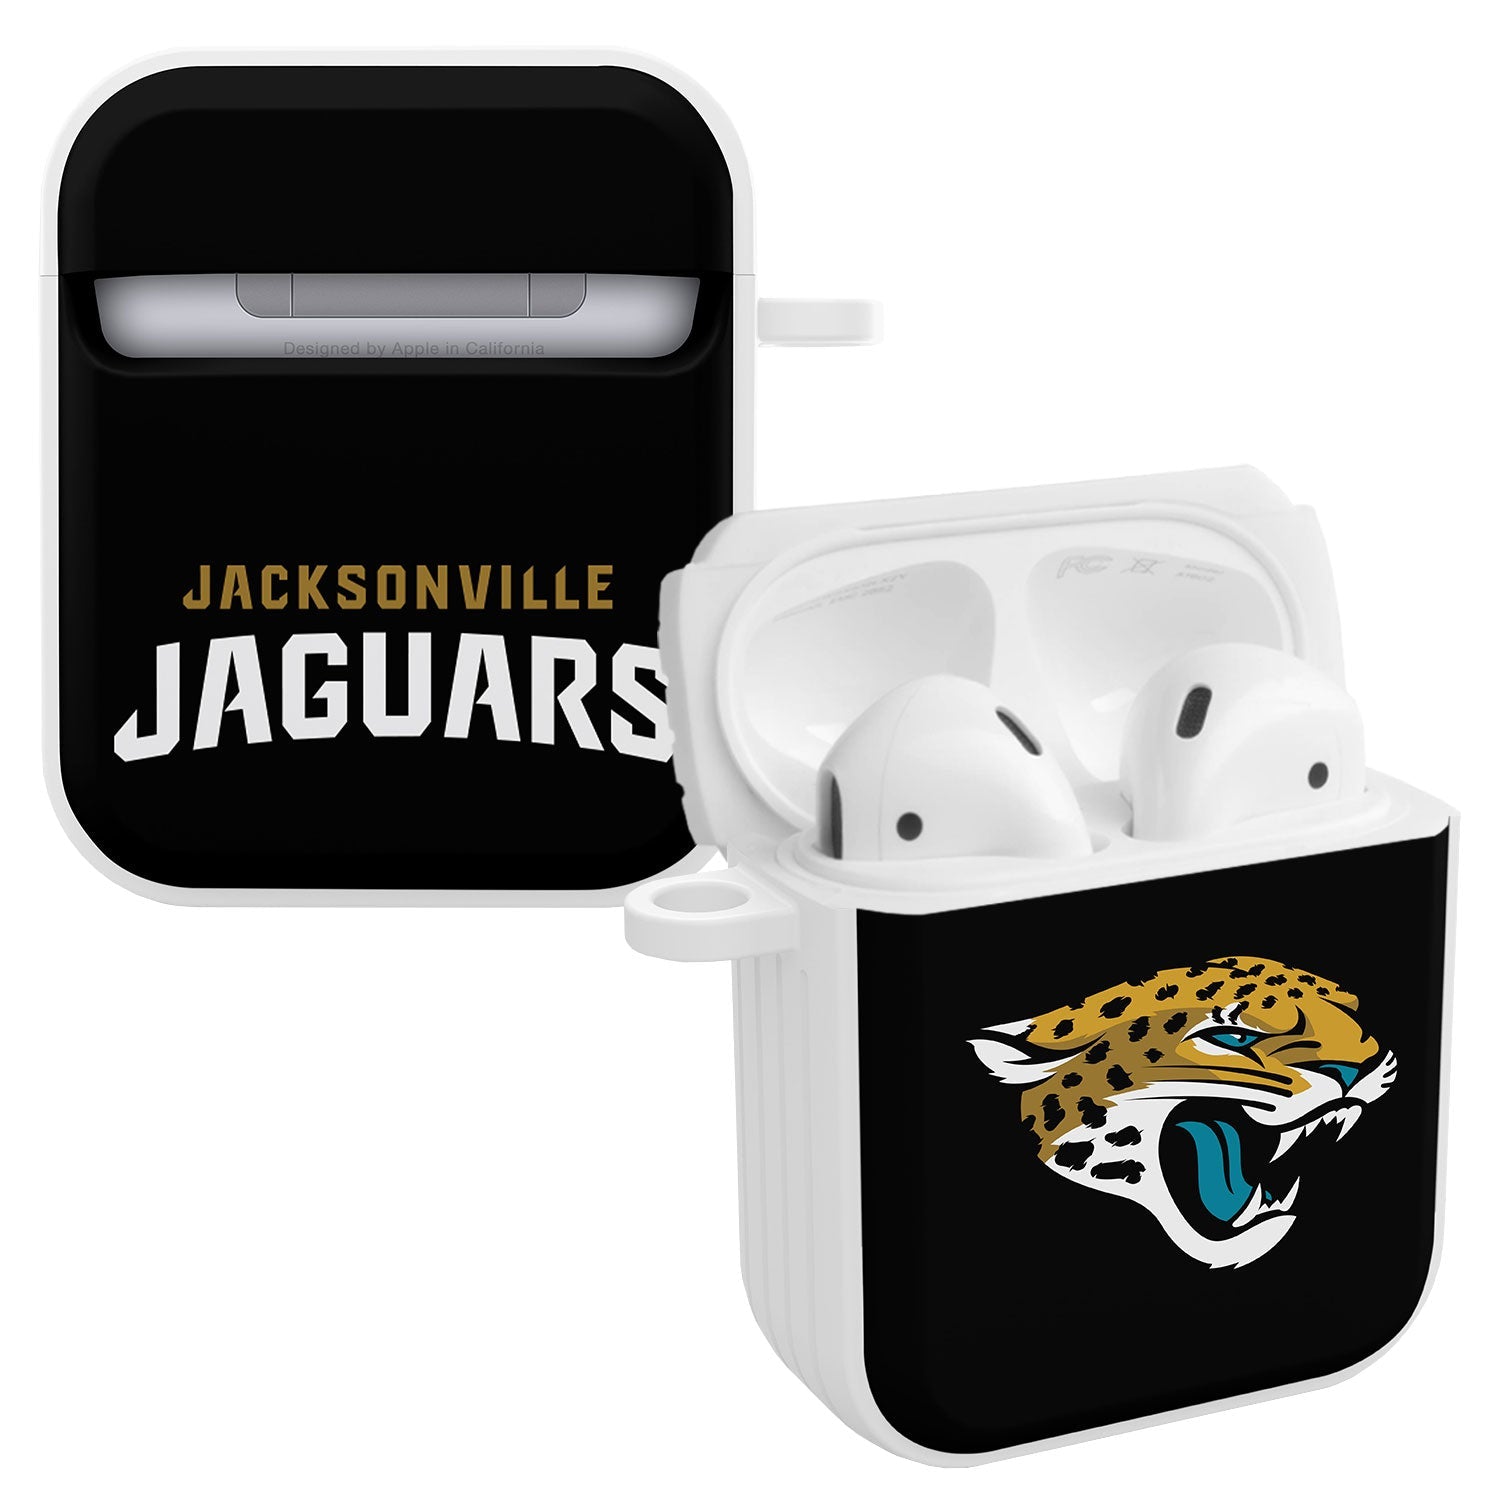 Jacksonville Jaguars HDX Apple AirPods Gen 1 & 2 Case Cover